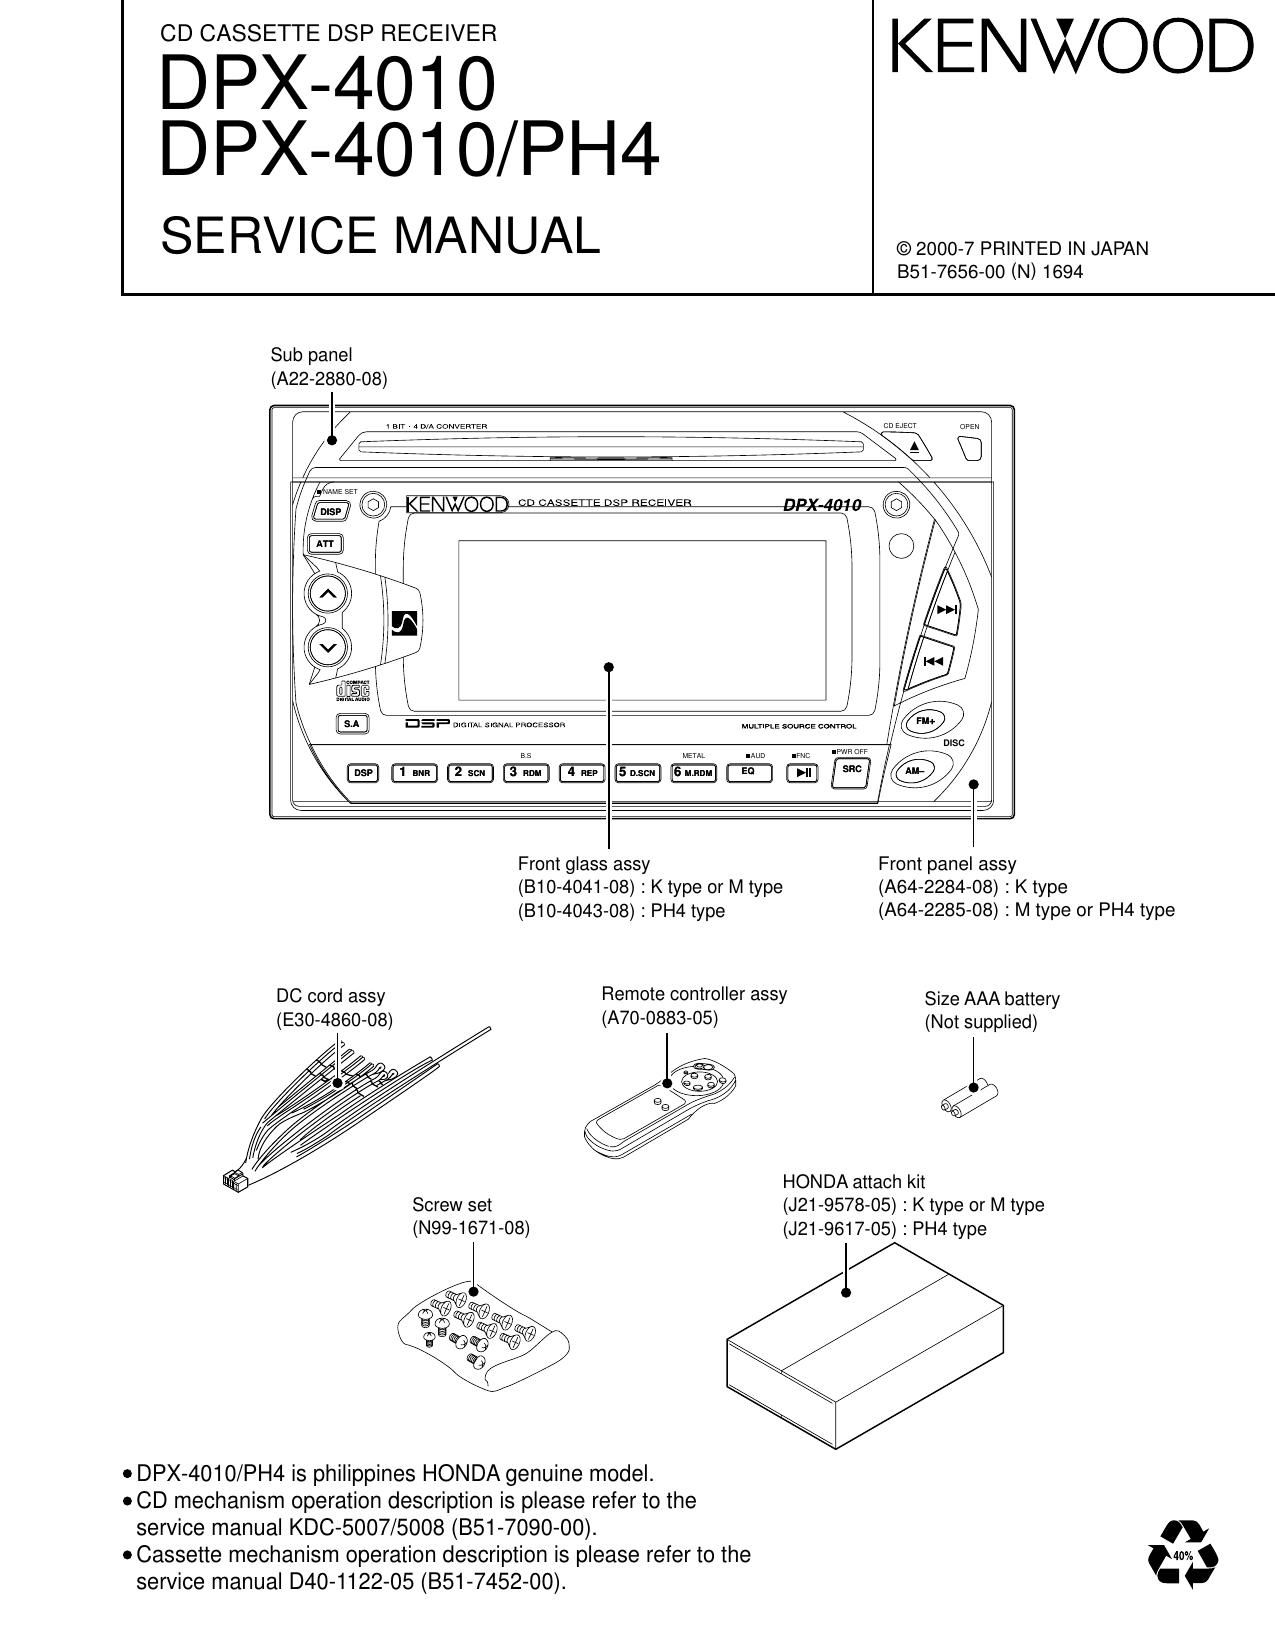 Kenwood DPX 4010 PH 4 Service Manual